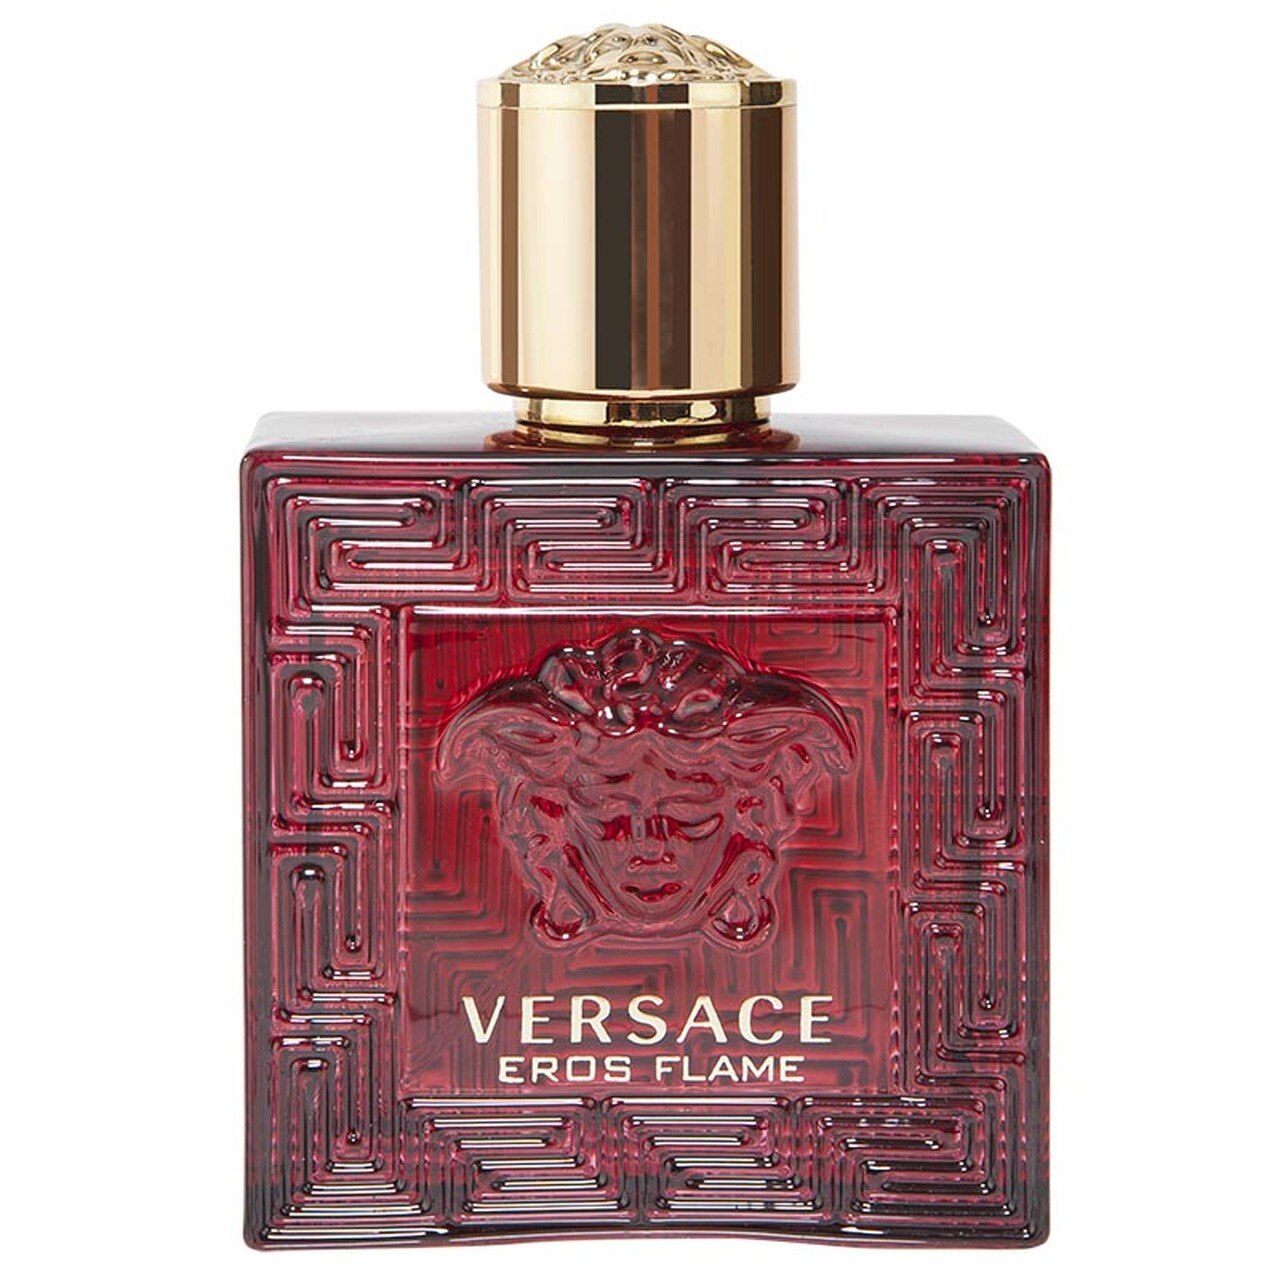 Versace Eros Flame 50ml Eau De Parfum (Blemished Box)